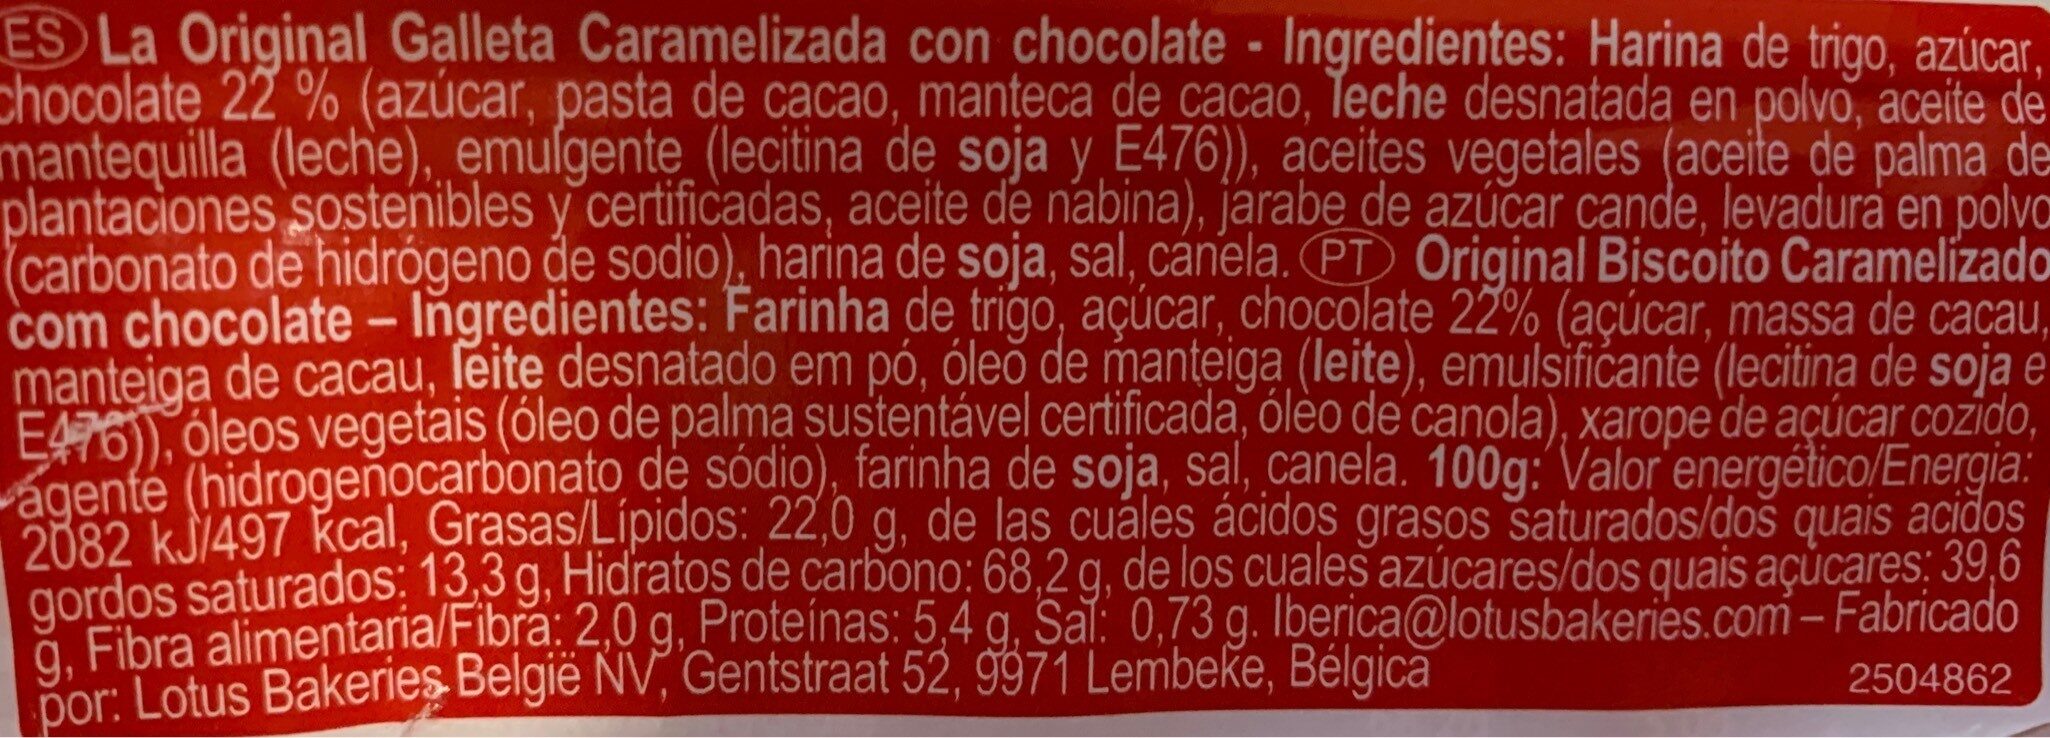 Galletas con chocolate - Informació nutricional - es